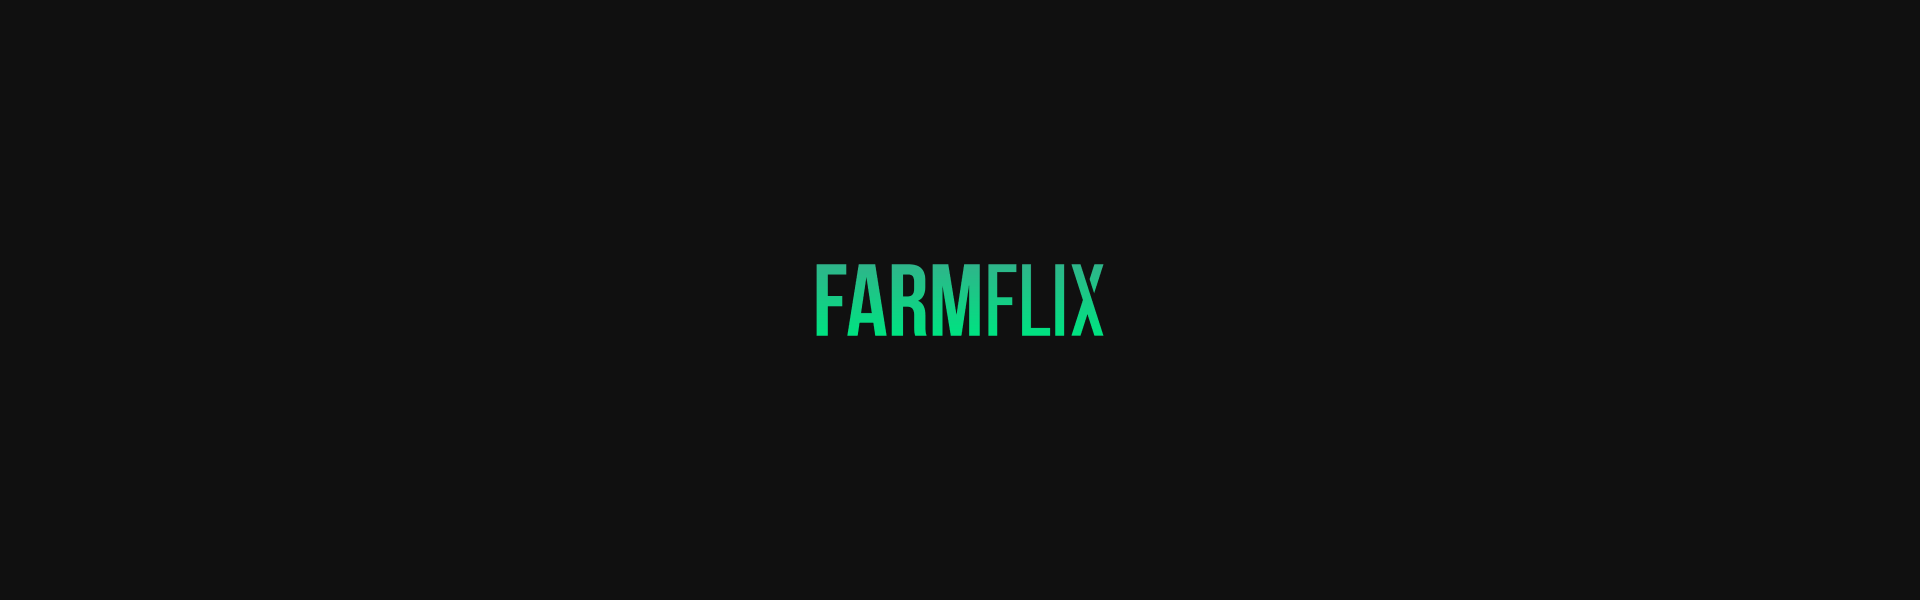 Farmflix